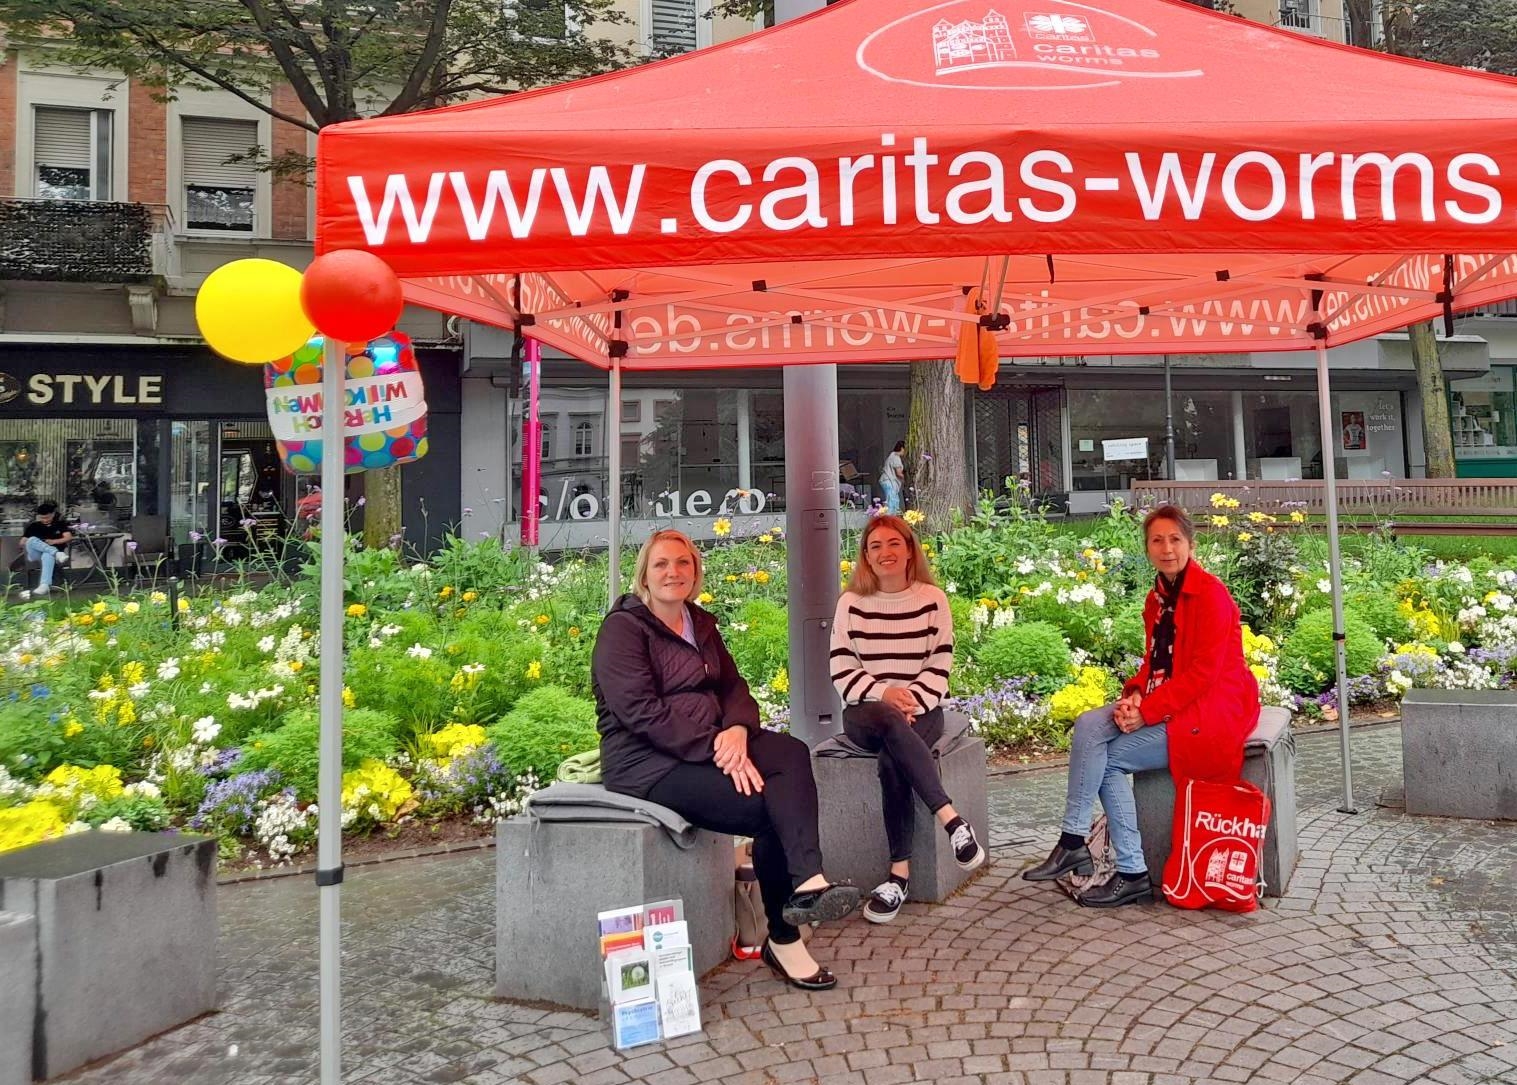 drei Frauen unter einem roten Caritas-Pavillon auf einer Bank